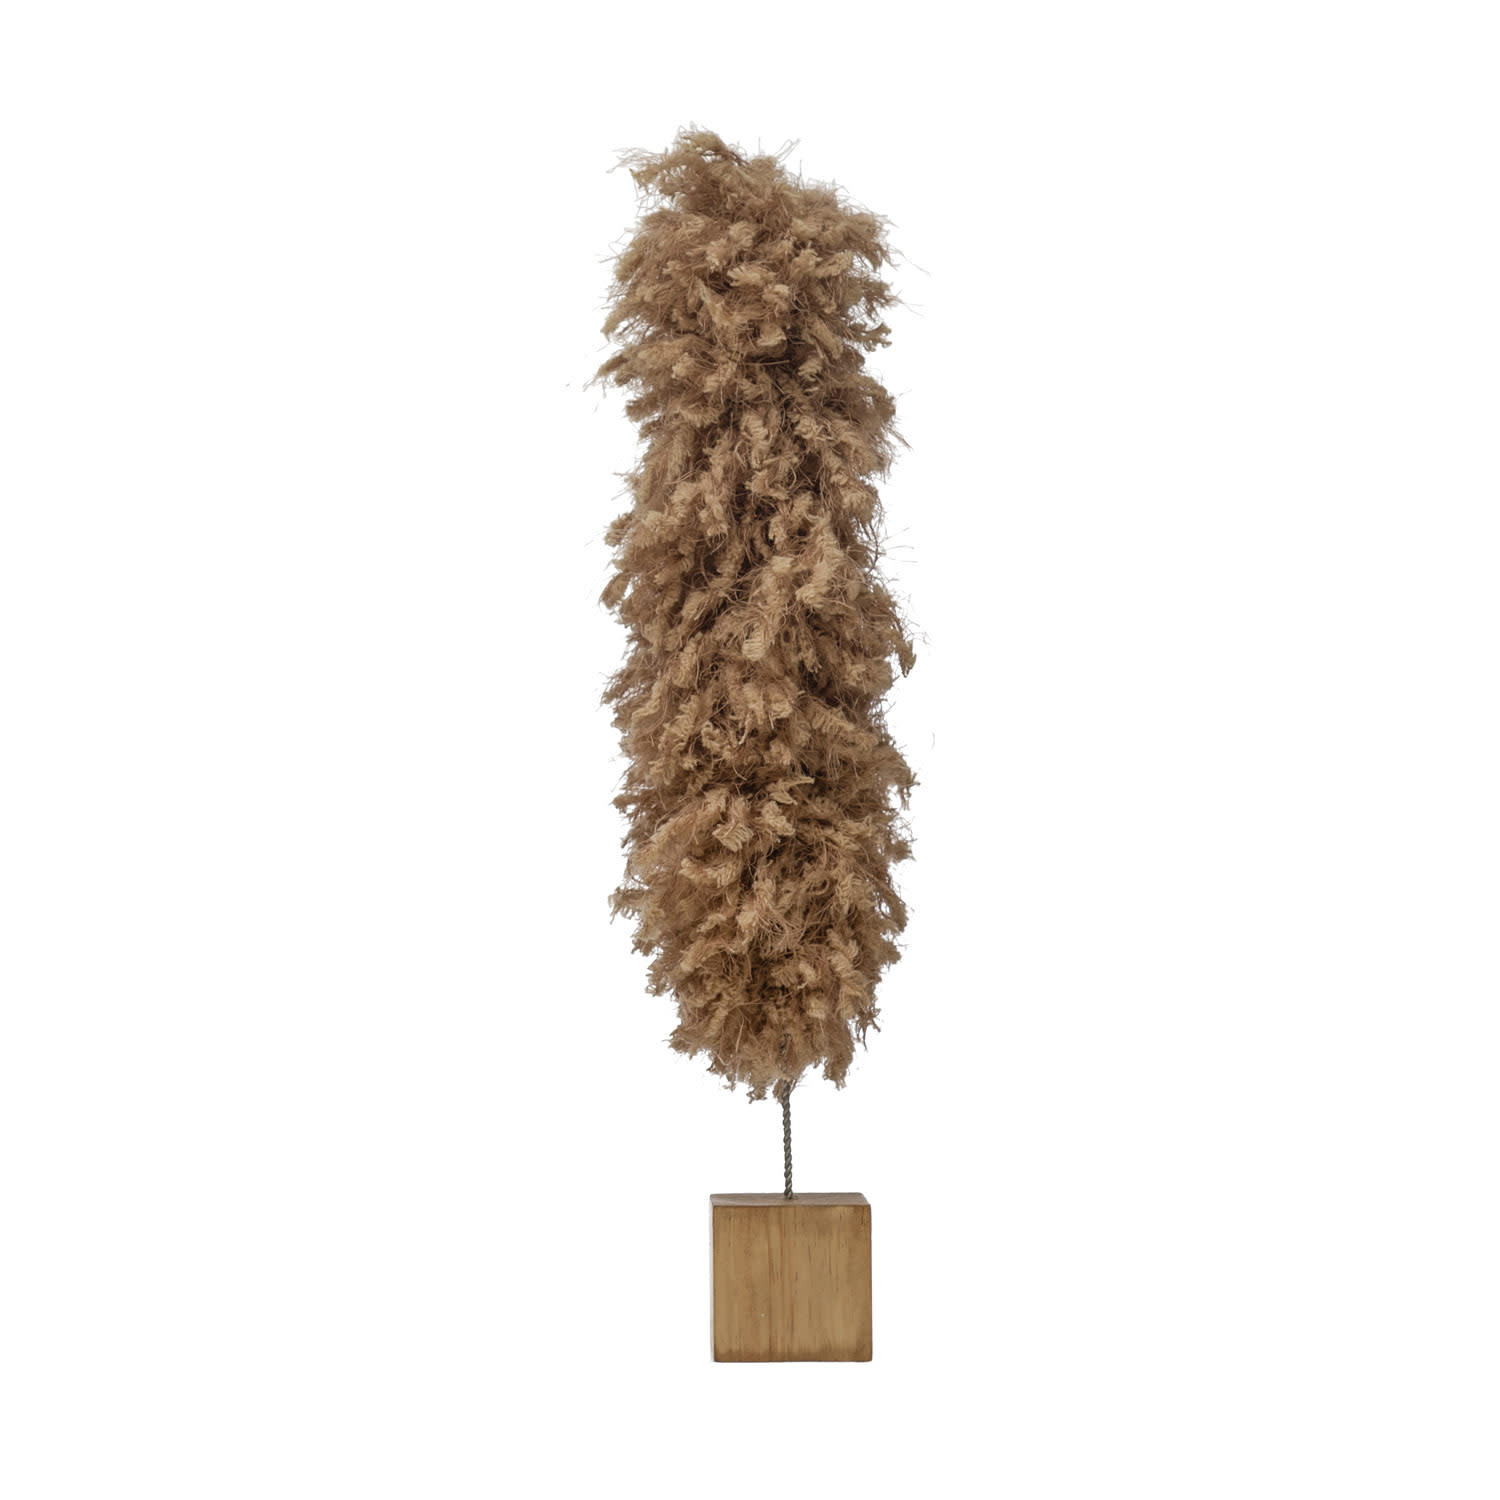 Fabric Yarn Tree with Wood Base, Tan, 15"